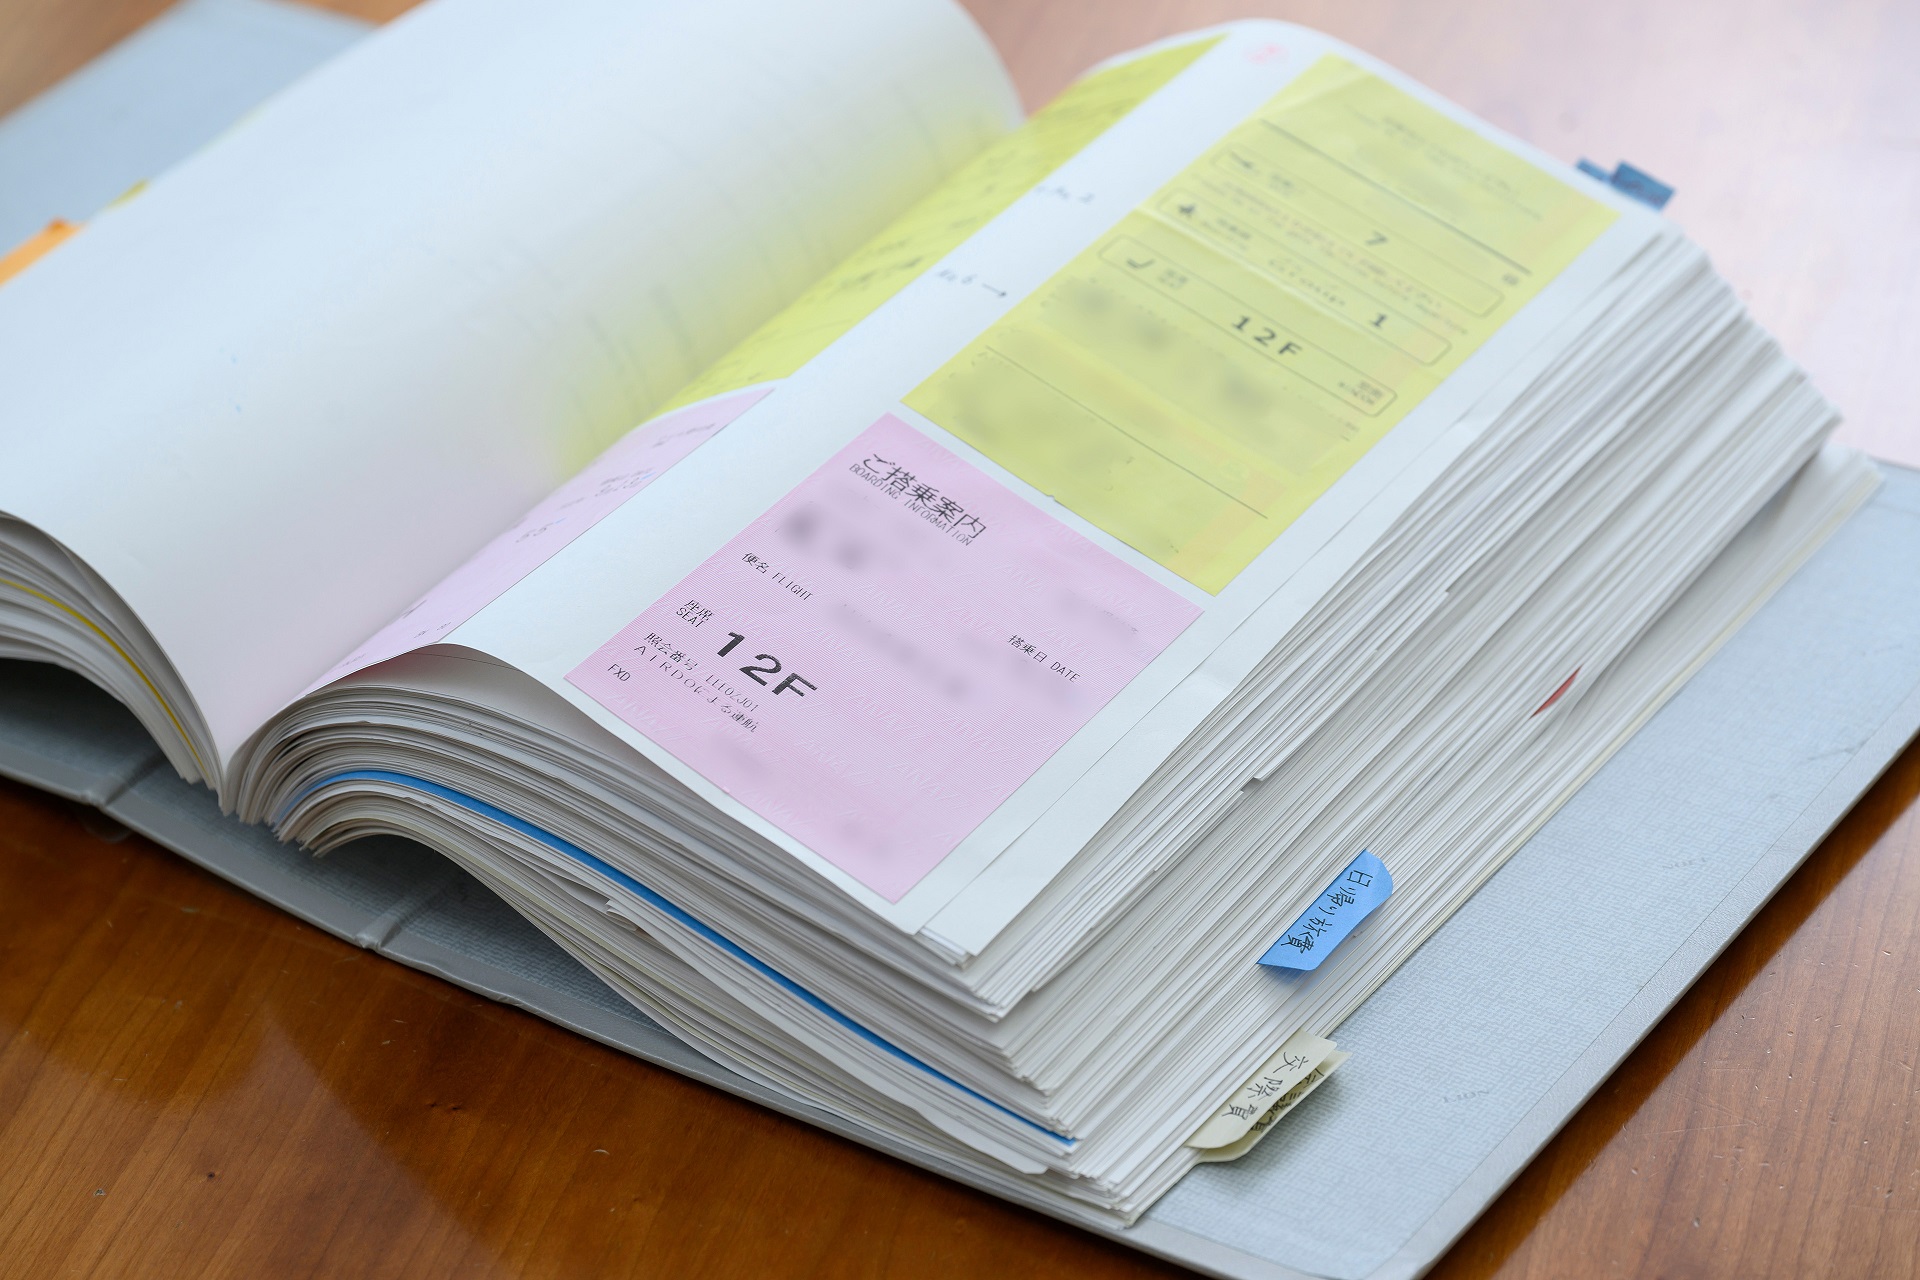 証憑を紙で回付していた頃の、航空運賃精算のための搭乗を証明する証憑の写真